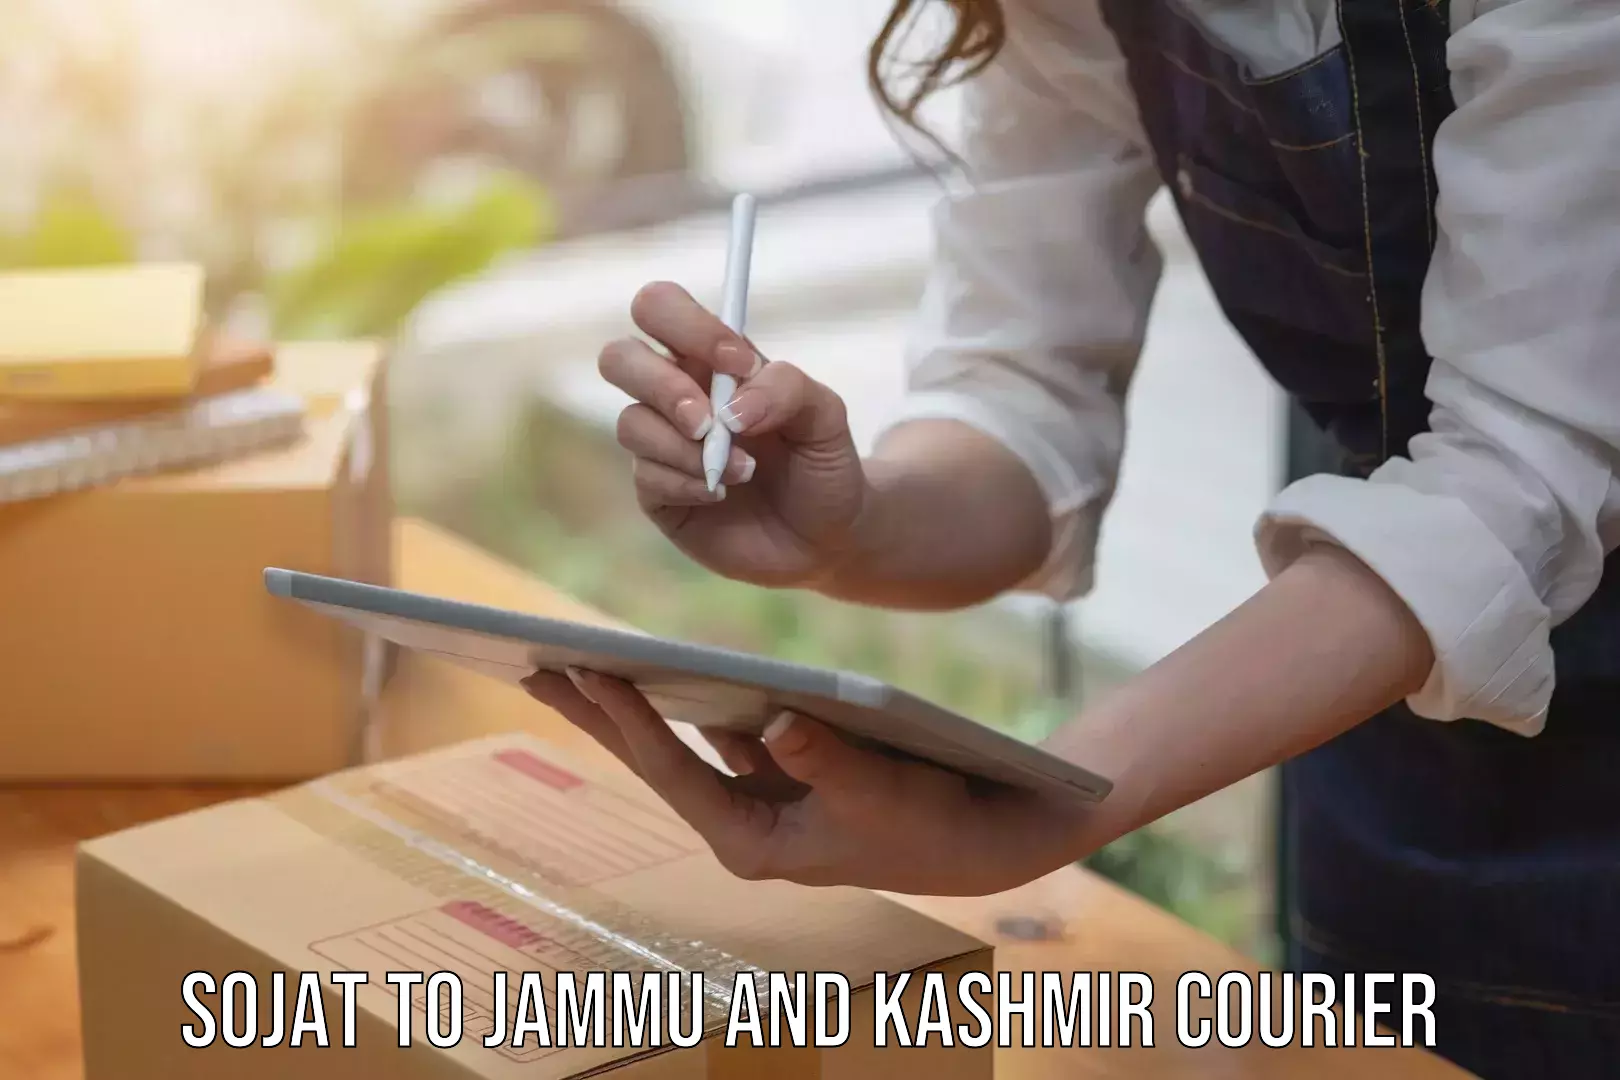 Premium courier solutions in Sojat to IIT Jammu